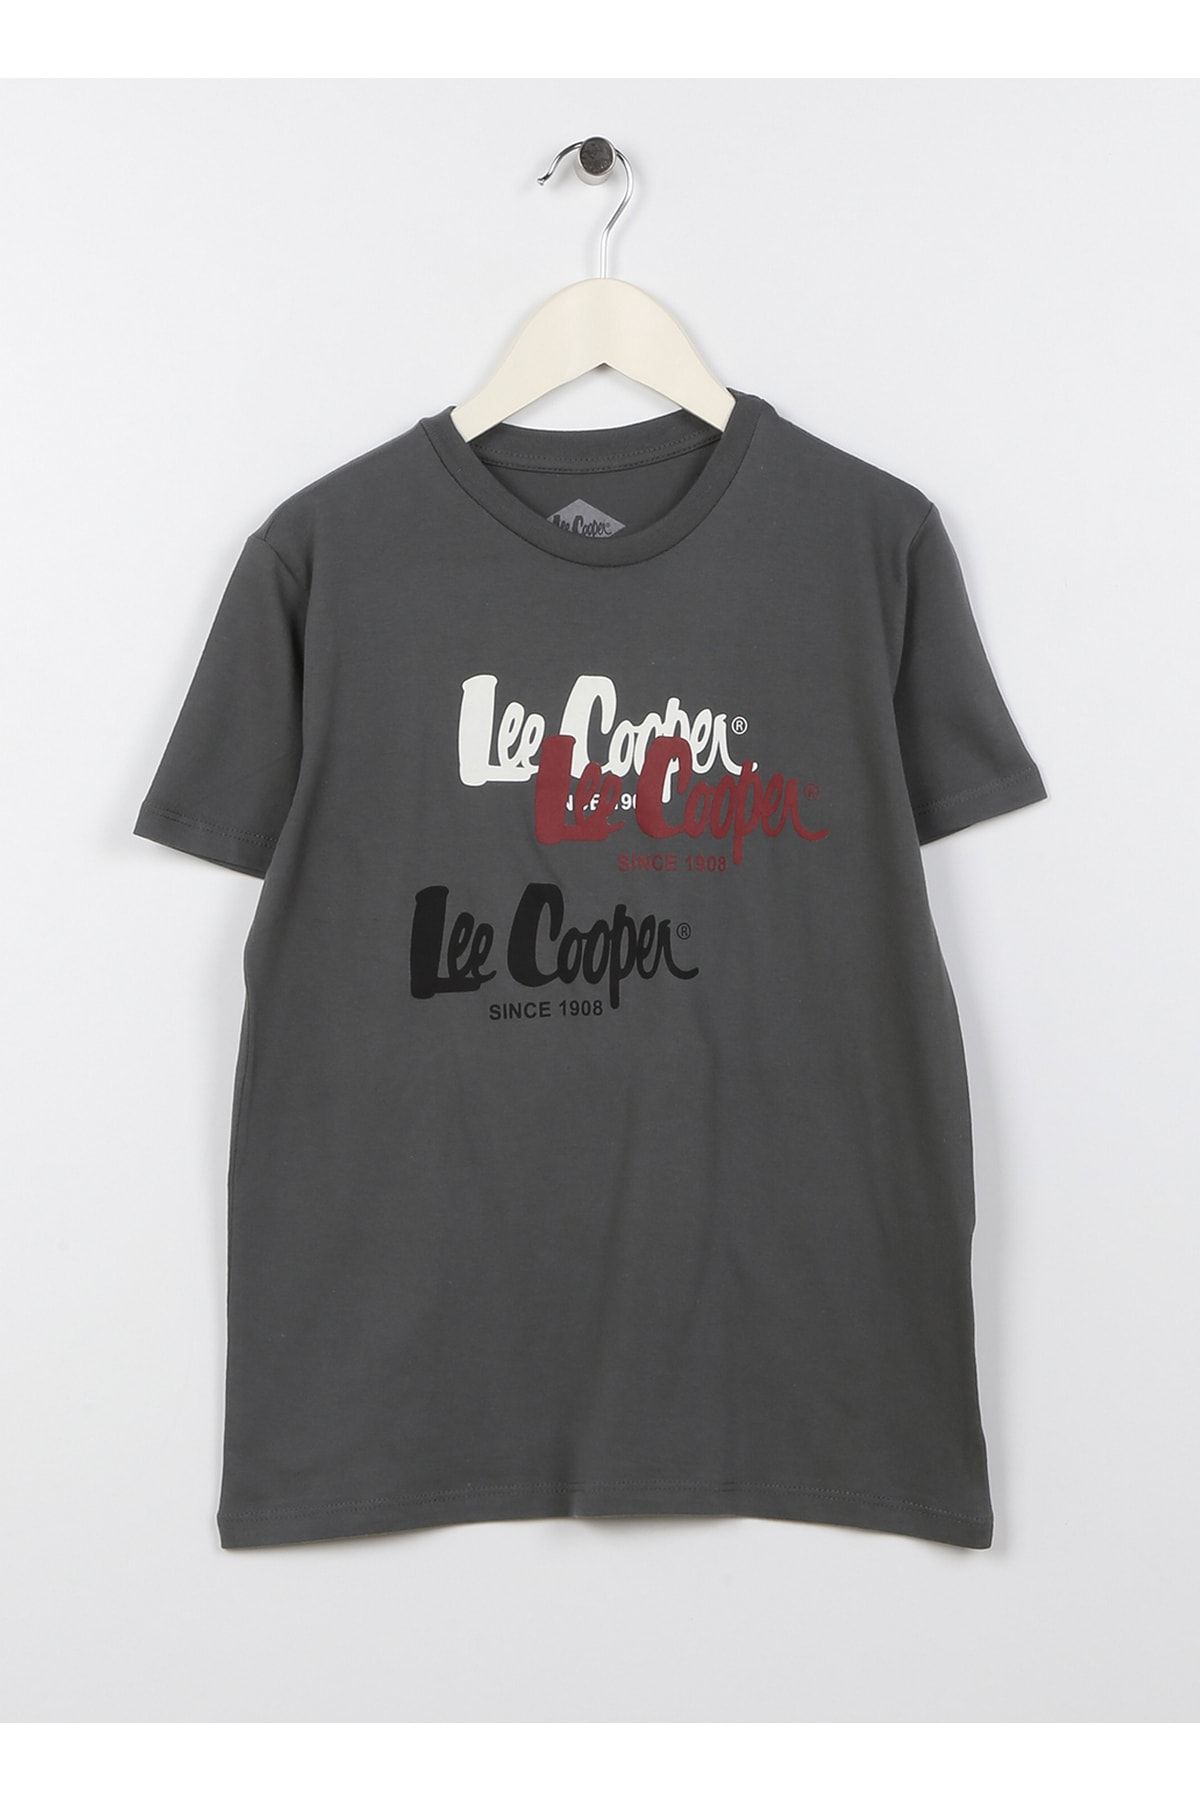 Lee Cooper تی شرت ، 8 سال دودی باز